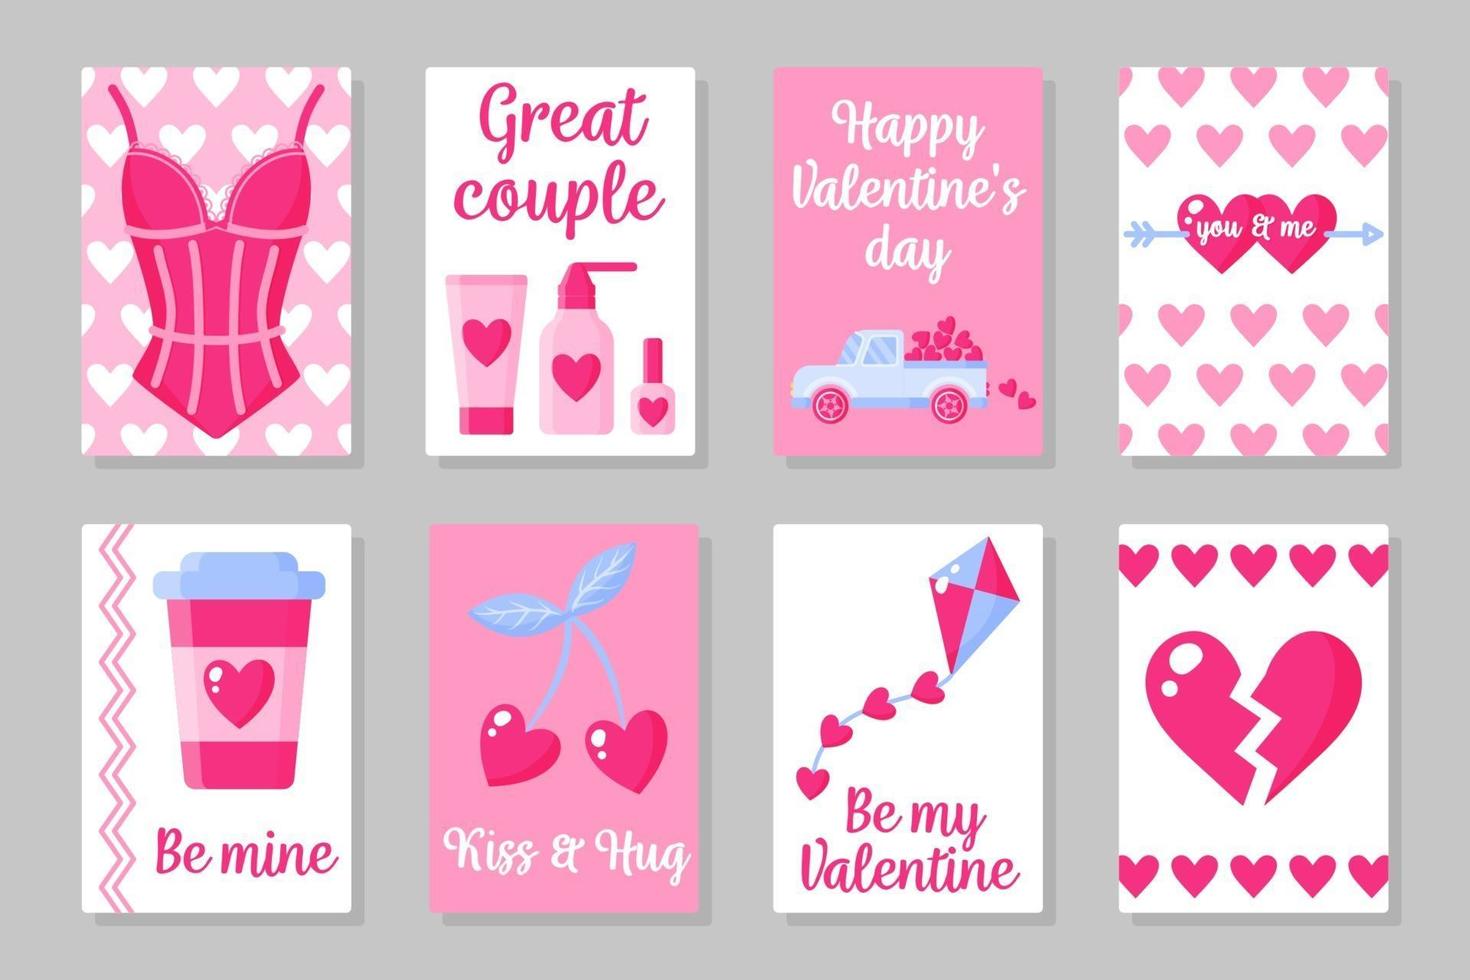 ensemble de cartes colorées roses, blanches et bleues pour la Saint-Valentin ou le mariage. design plat de vecteur isolé sur fond gris